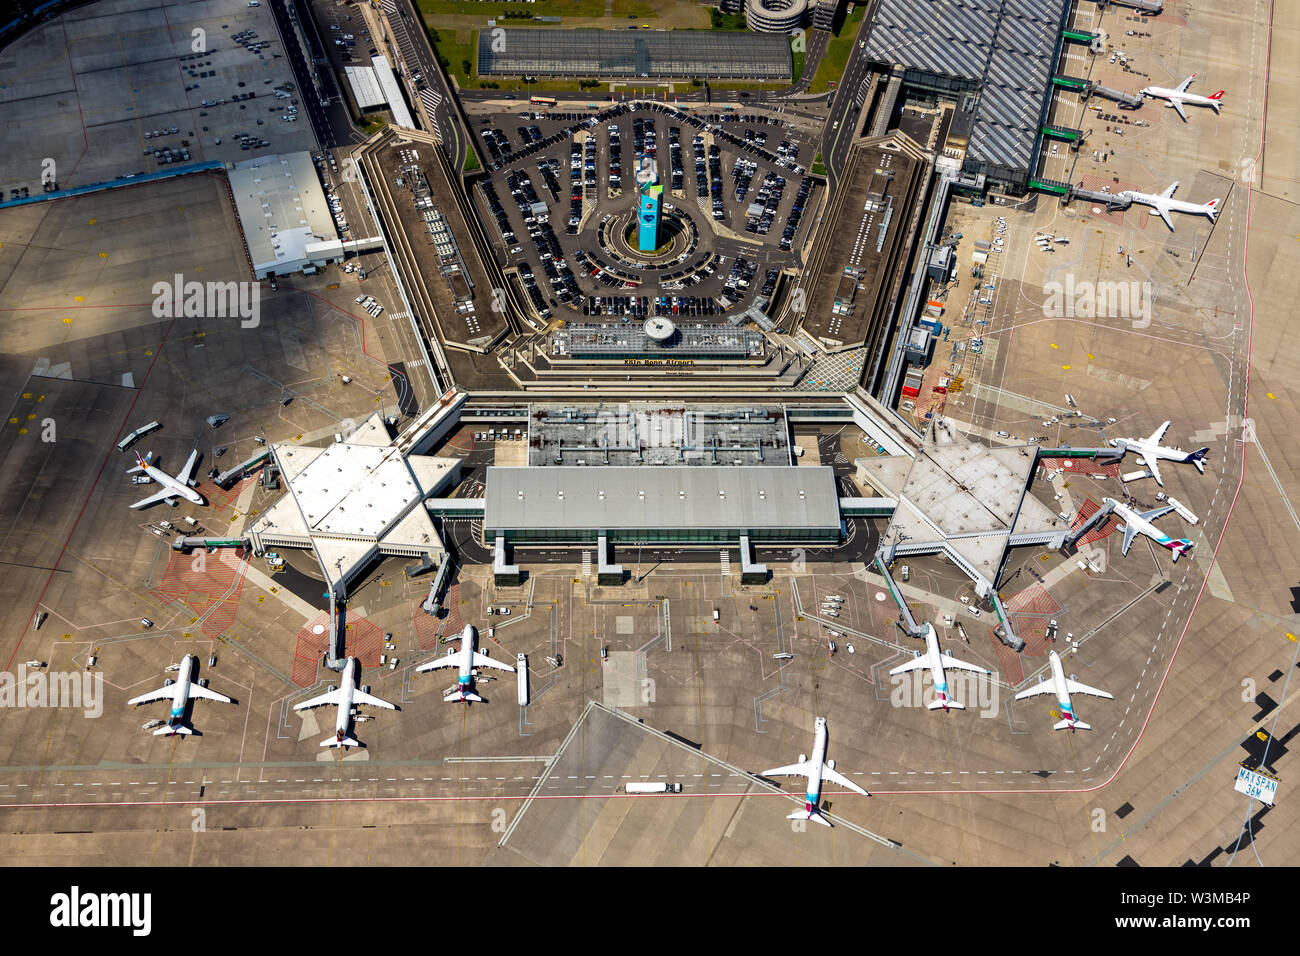 Foto aerea dell'aeroporto di Colonia / Bonn "Konrad Adenauer' con la manipolazione di dita, cancelli con getti di viaggio, aeromobili commerciali, commerci internazionali Foto Stock